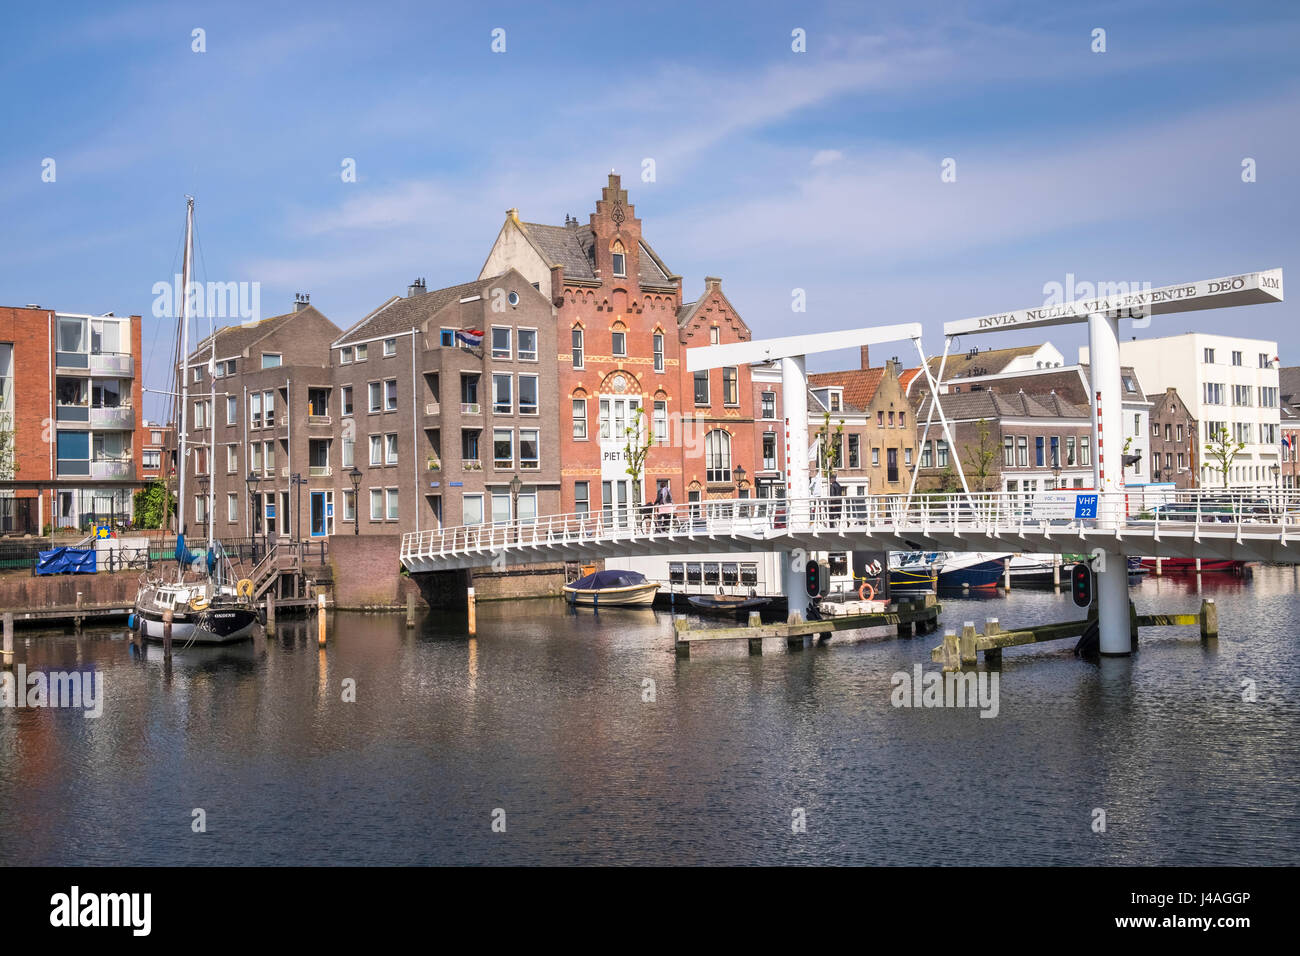 Bateaux et l'architecture hollandaise traditionnelle dans la zone historique de Delfshaven, à Rotterdam, aux Pays-Bas. Banque D'Images